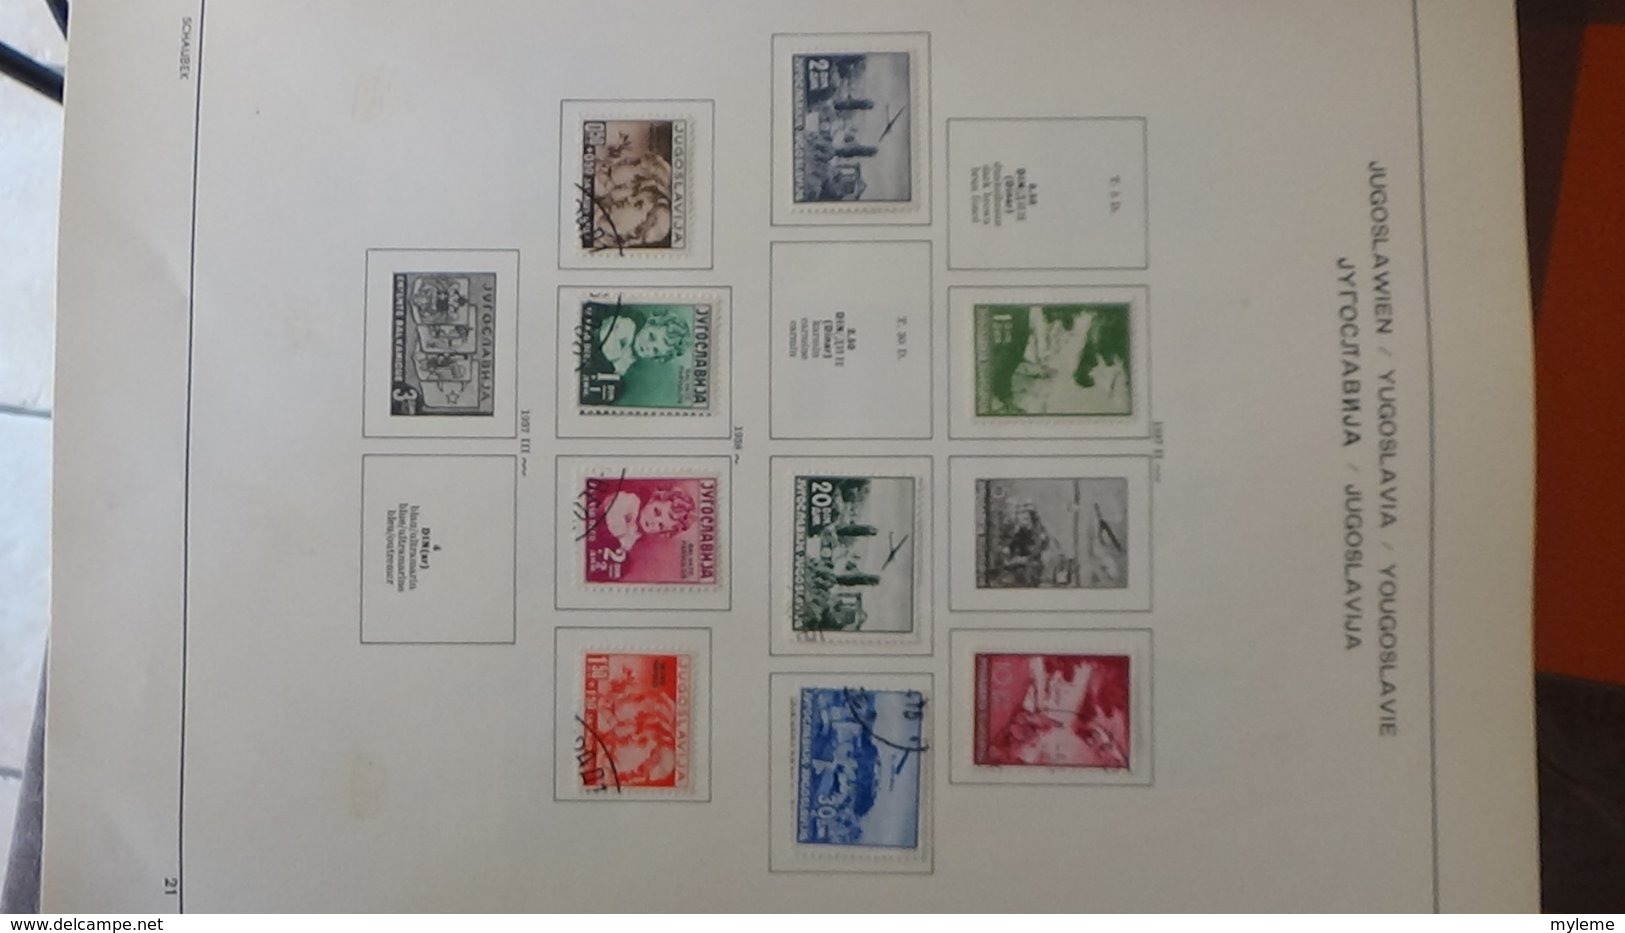 Collection timbres de YOUGOSLAVIE Idéal pour thématiques A saisir !!!